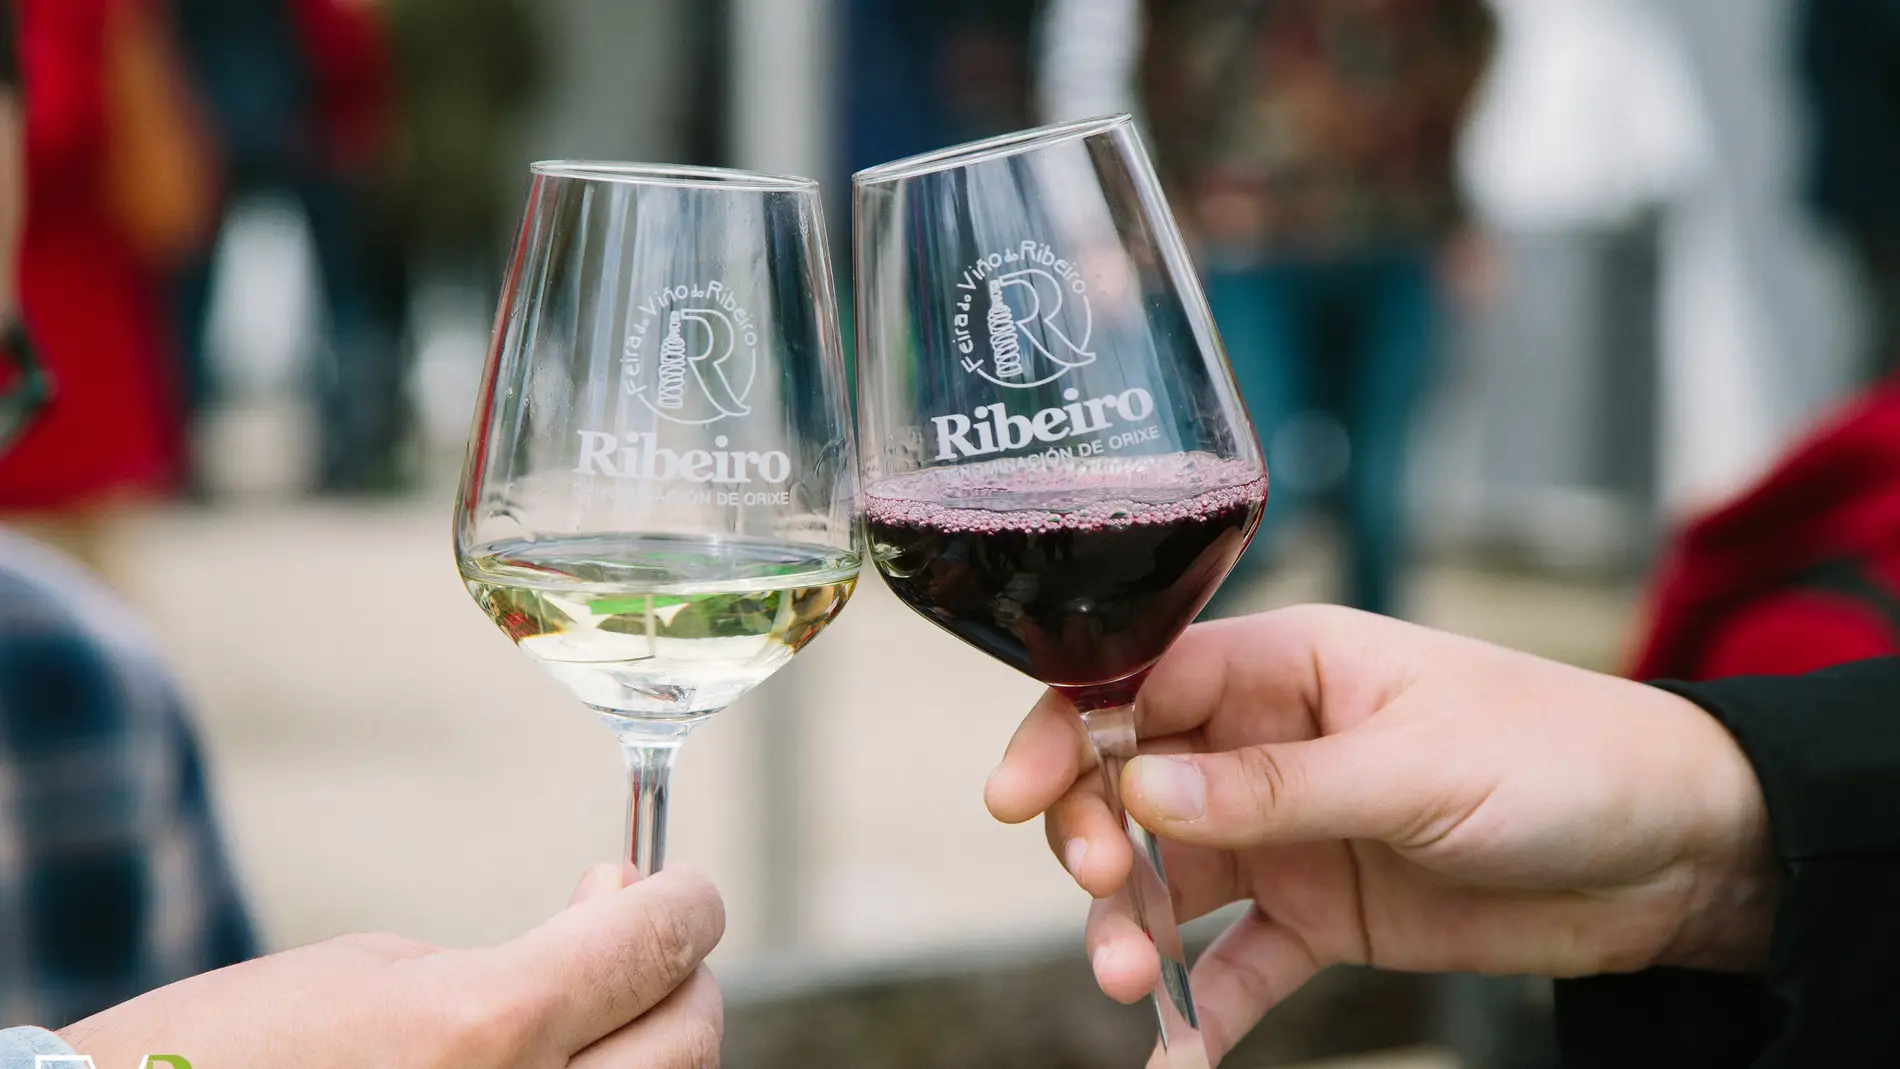 Ábrese o prazo para preseleccionar o cartel da feira do viño do Ribeiro